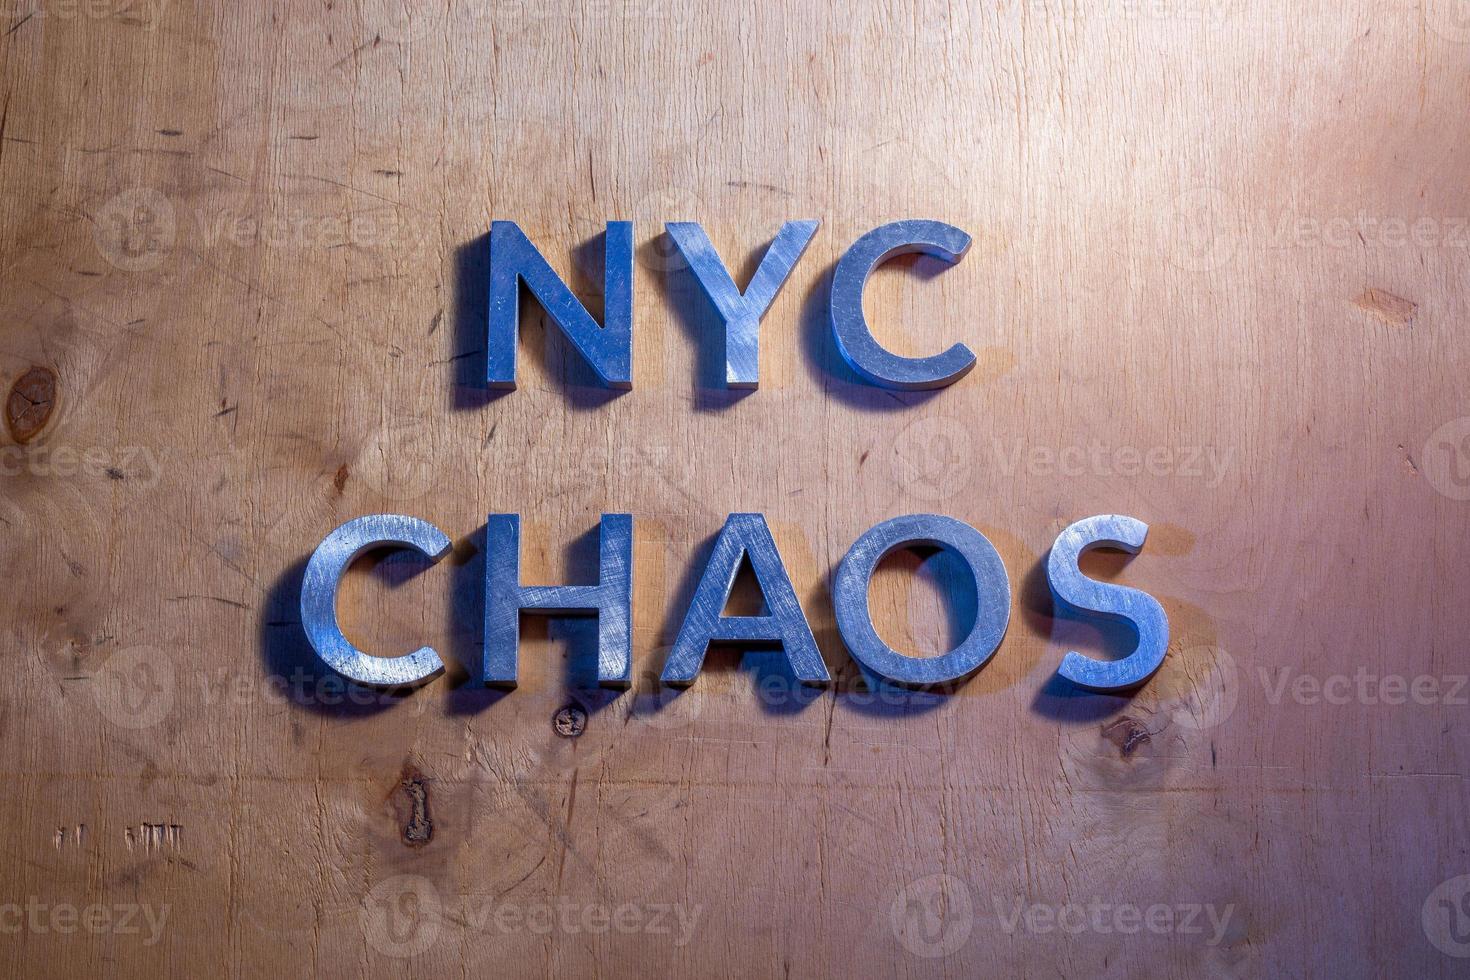 il parole nyc caos di cui con metallo lettere su piatto compensato superficie sotto bianca e blu polizia luci. concetto. foto